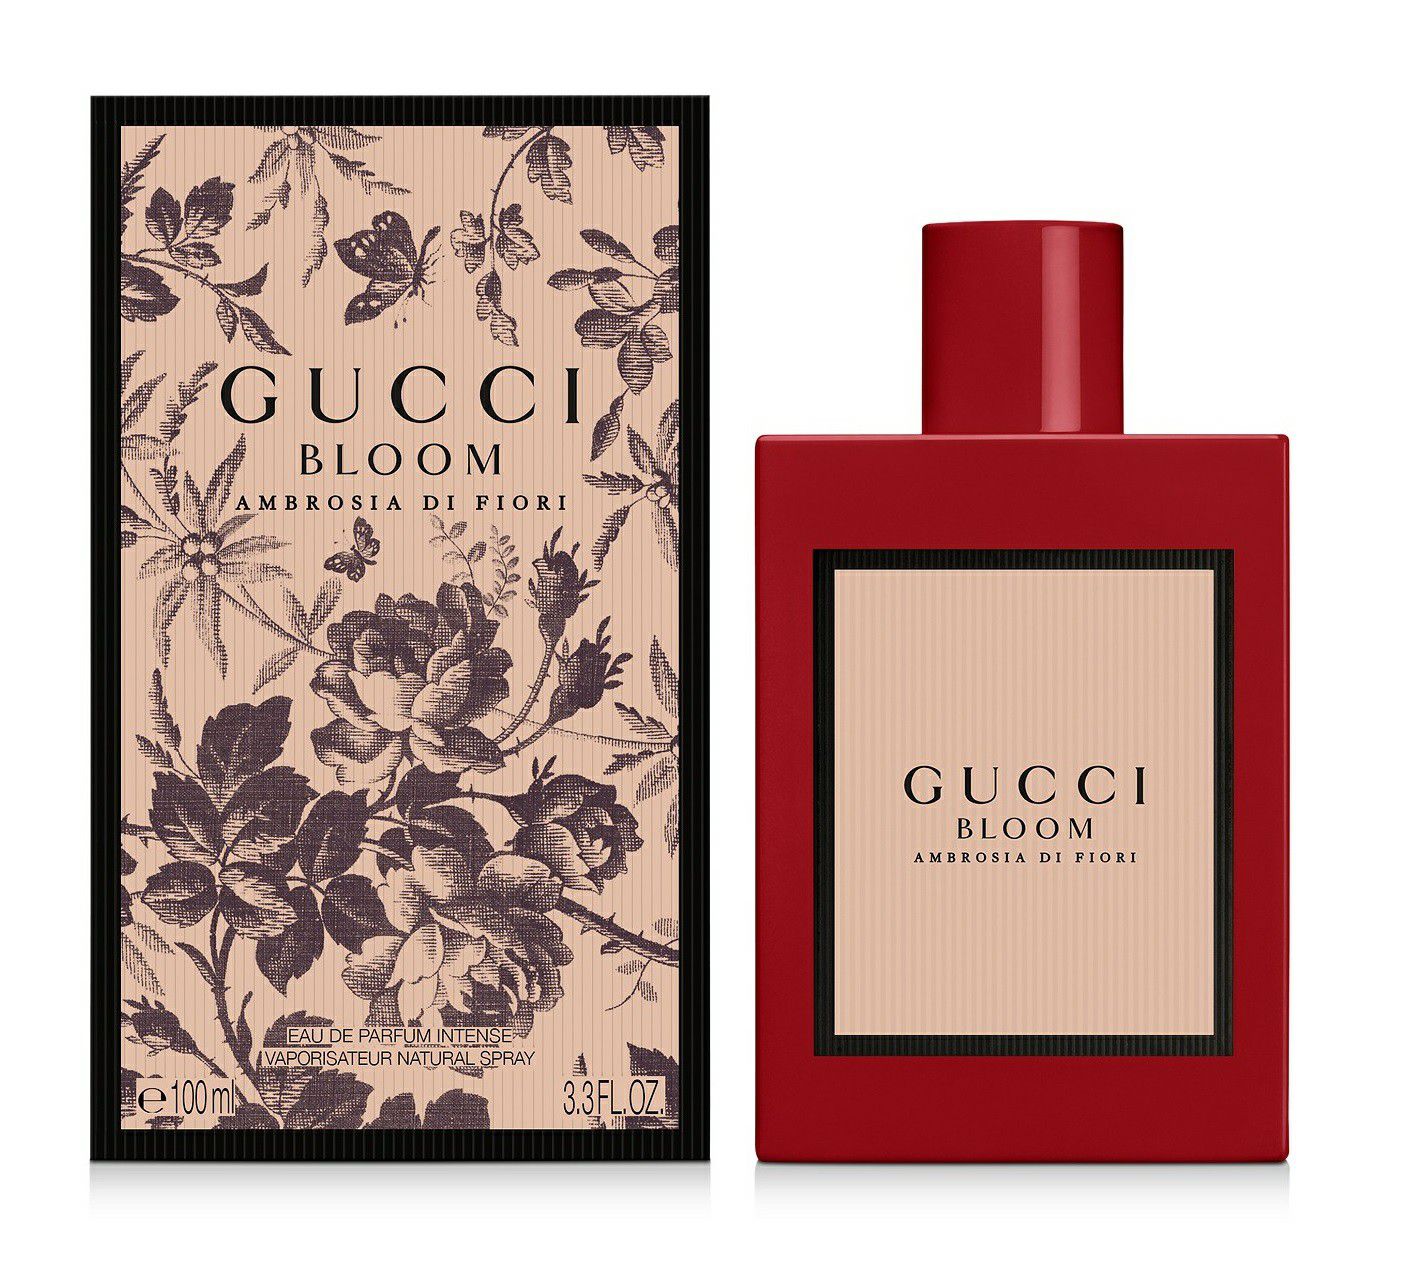 Gucci Bloom Ambrosia Di Fiori Perfume 100ml New!